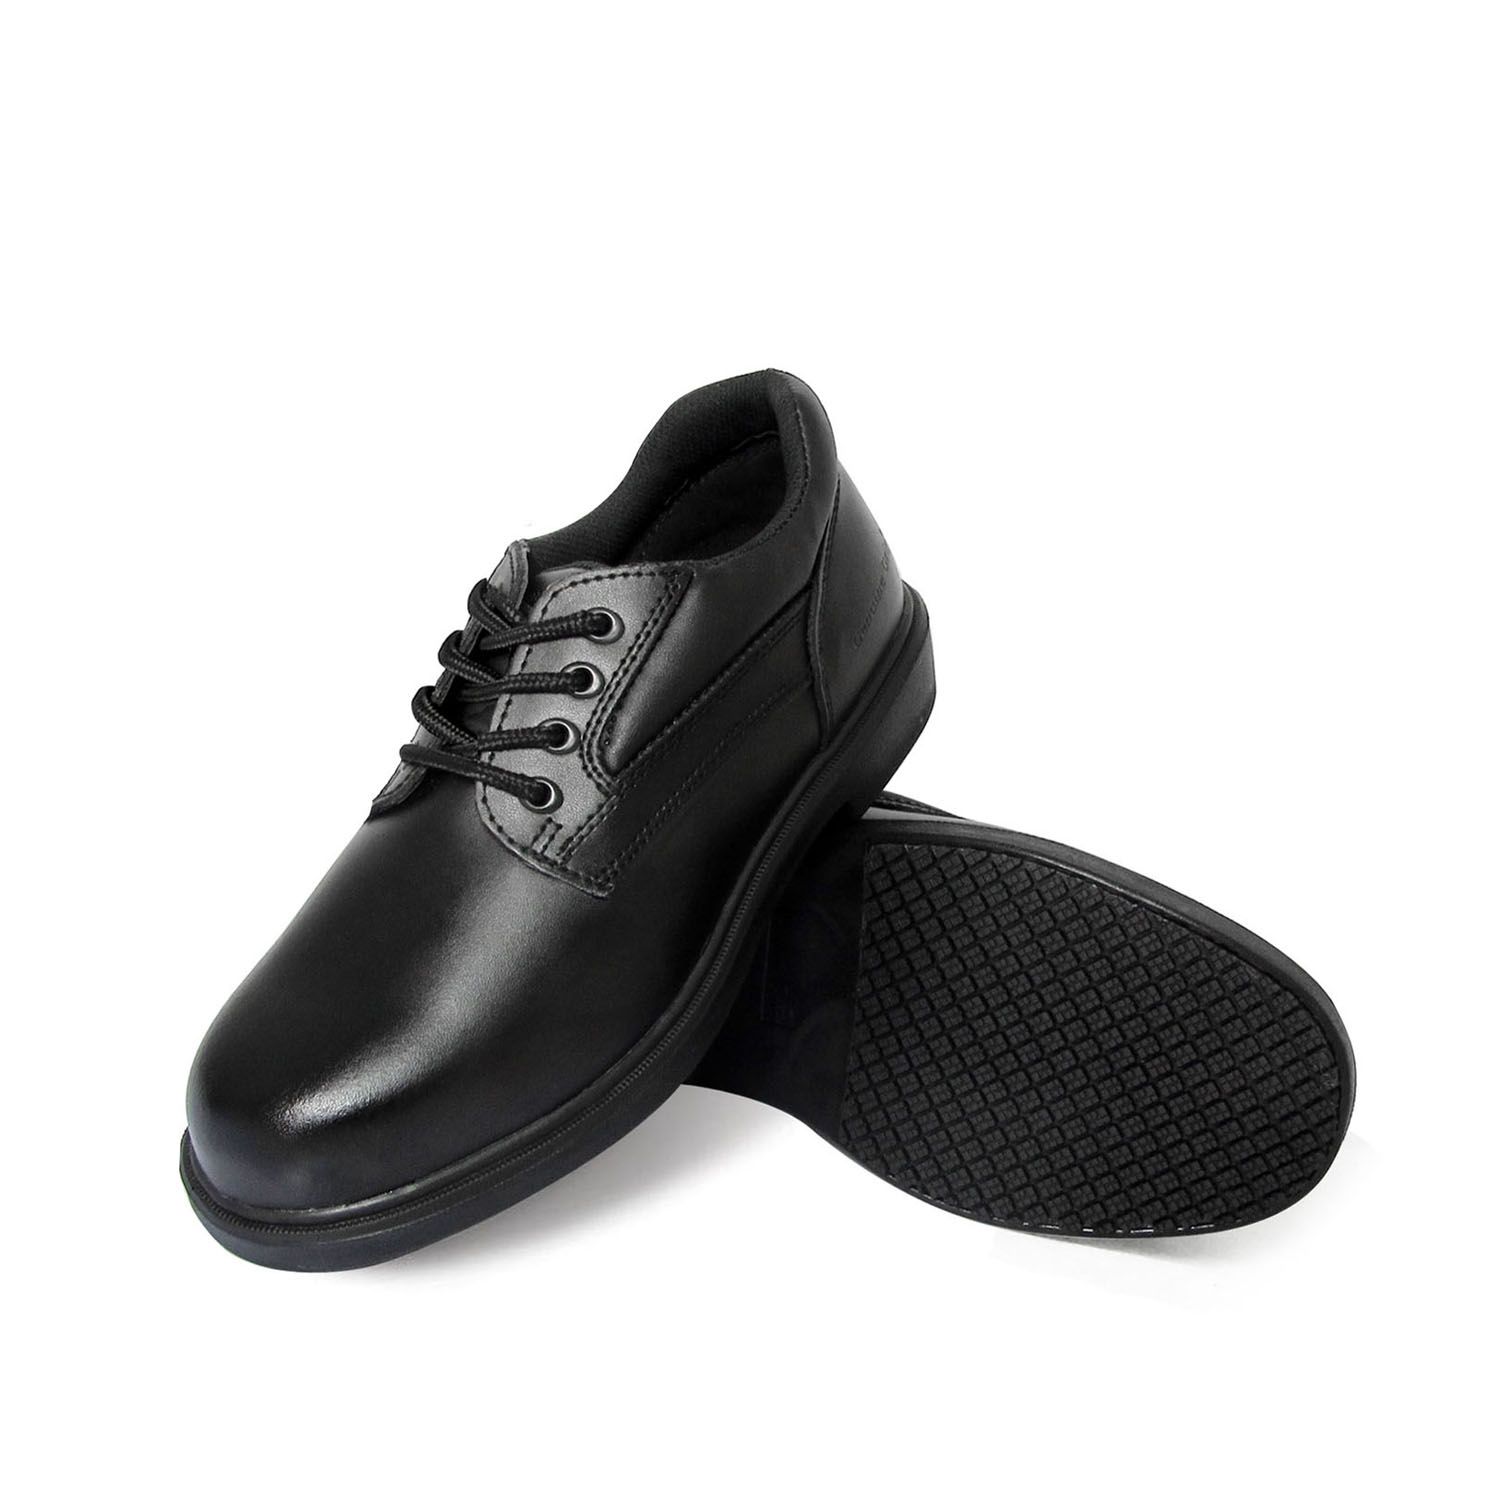 slip resistant shoes size 4